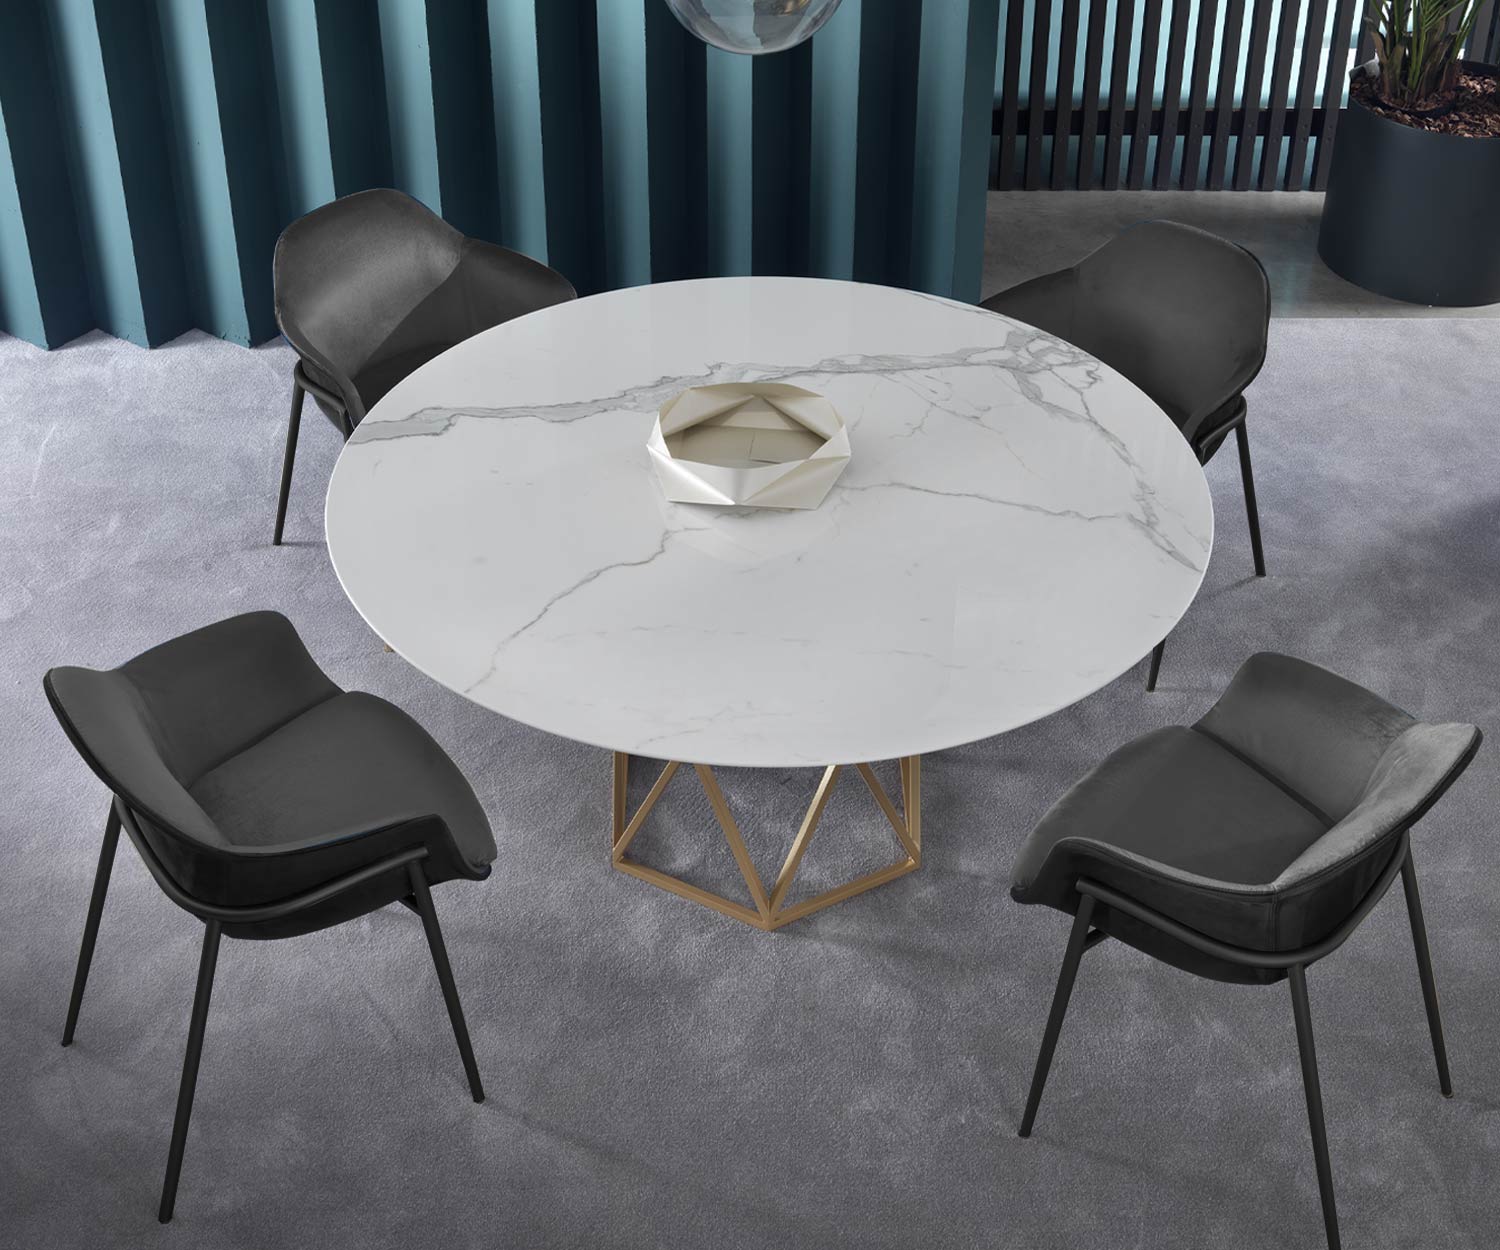 Fauteuil confortable dans la salle à manger avec table en marbre disposée en ensemble de 4 personnes